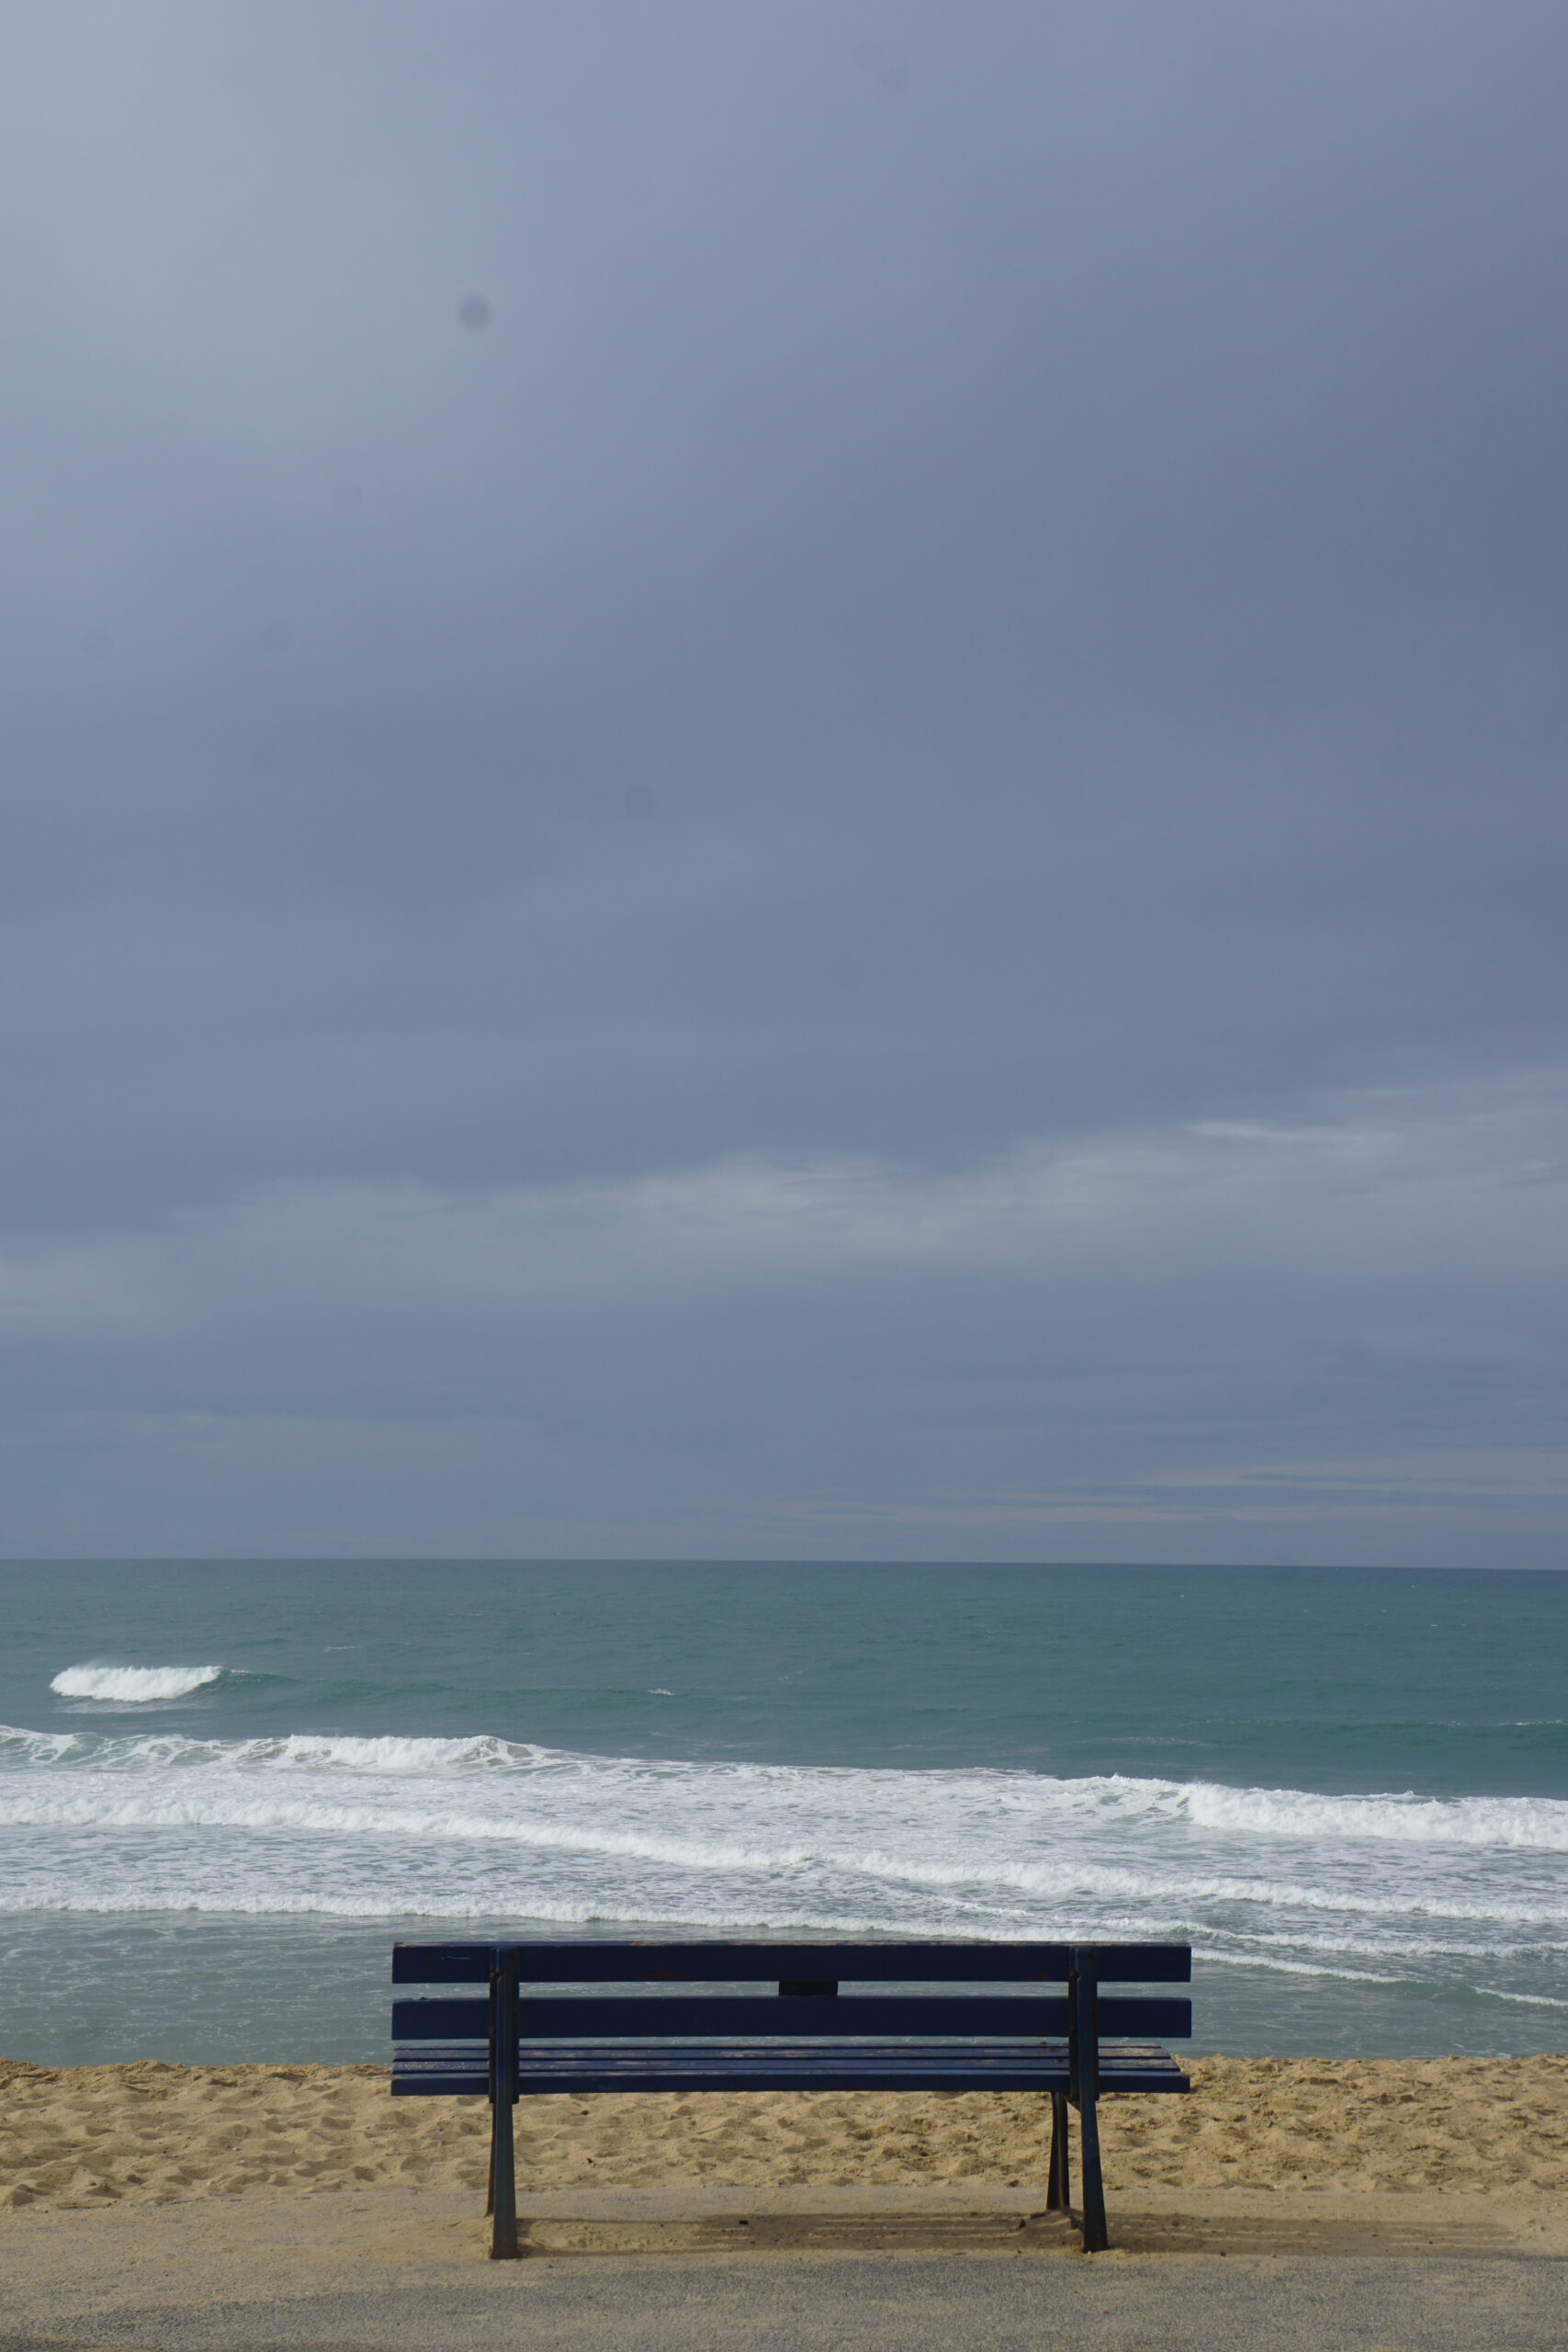 Photographie d'un banc vide face à l'océan.